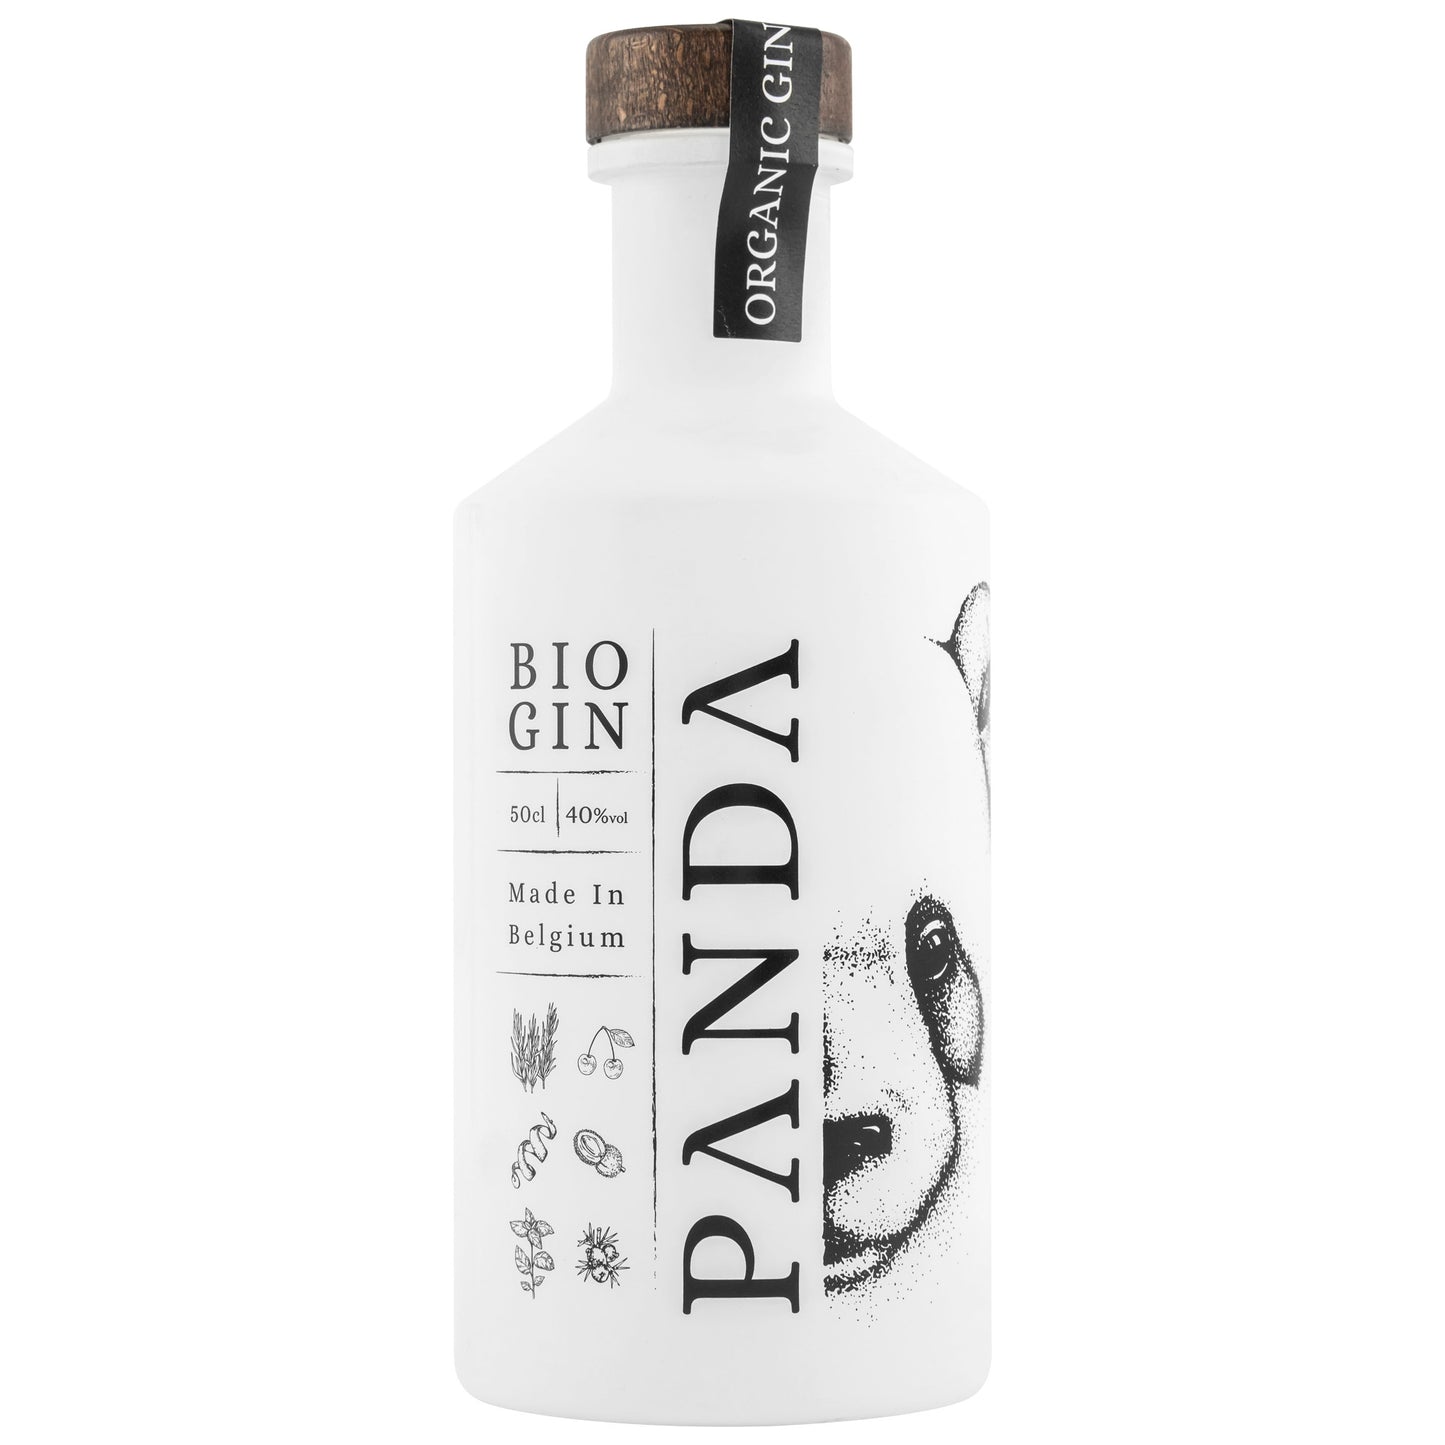 Panda Organic Gin